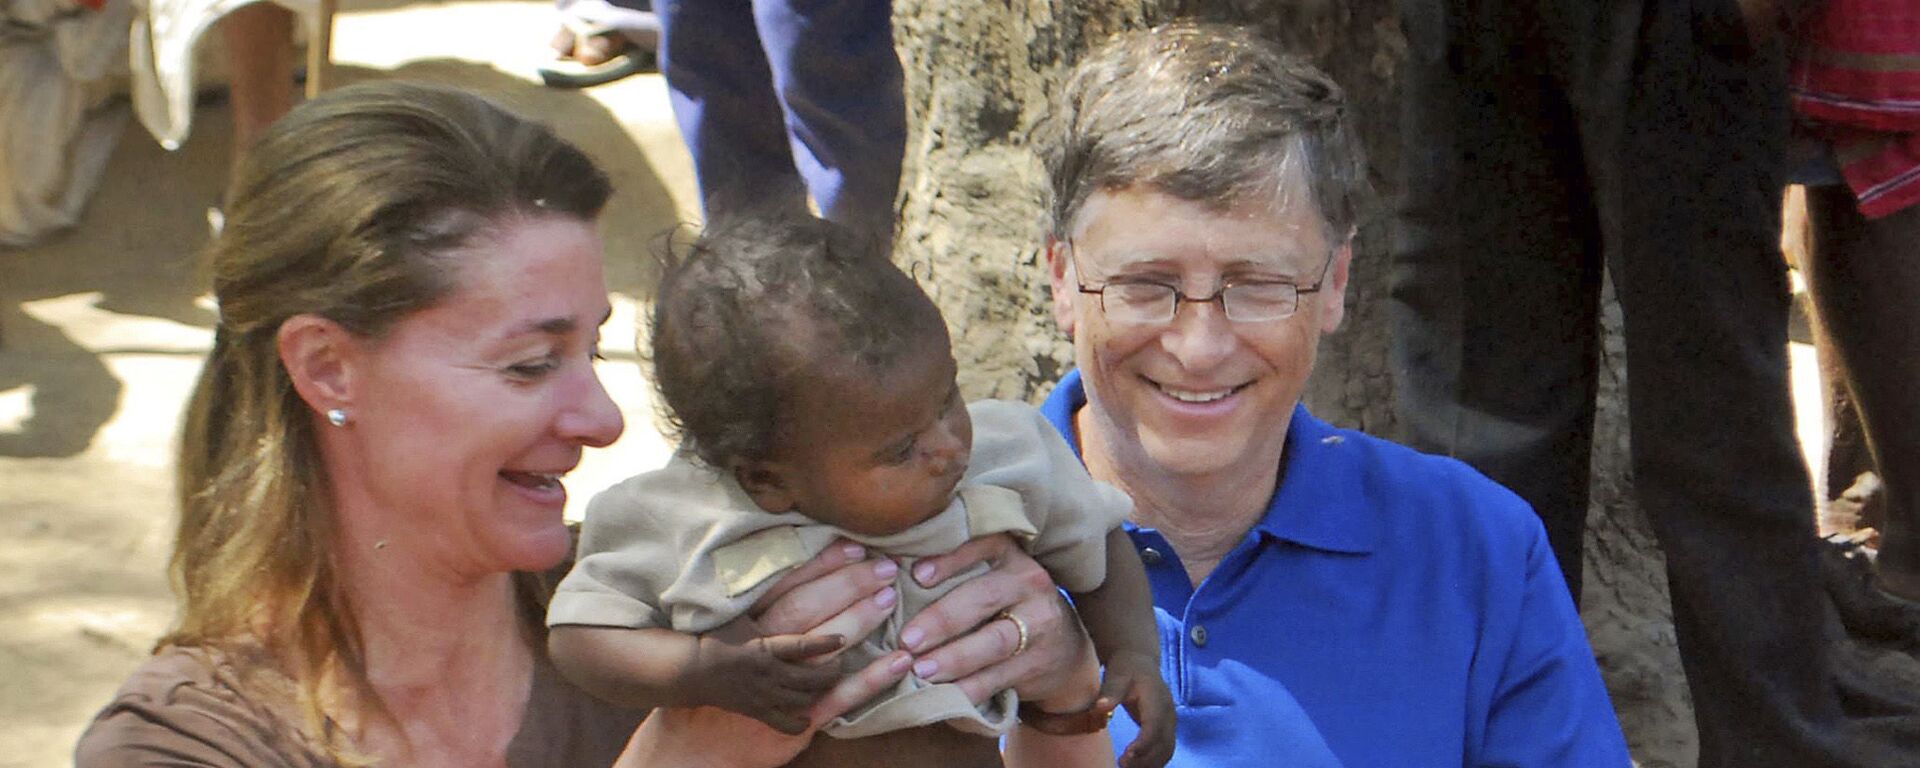 Билл Гейтс с супругой Мелиндой в Индии, 2011 год - Sputnik Молдова, 1920, 05.05.2021